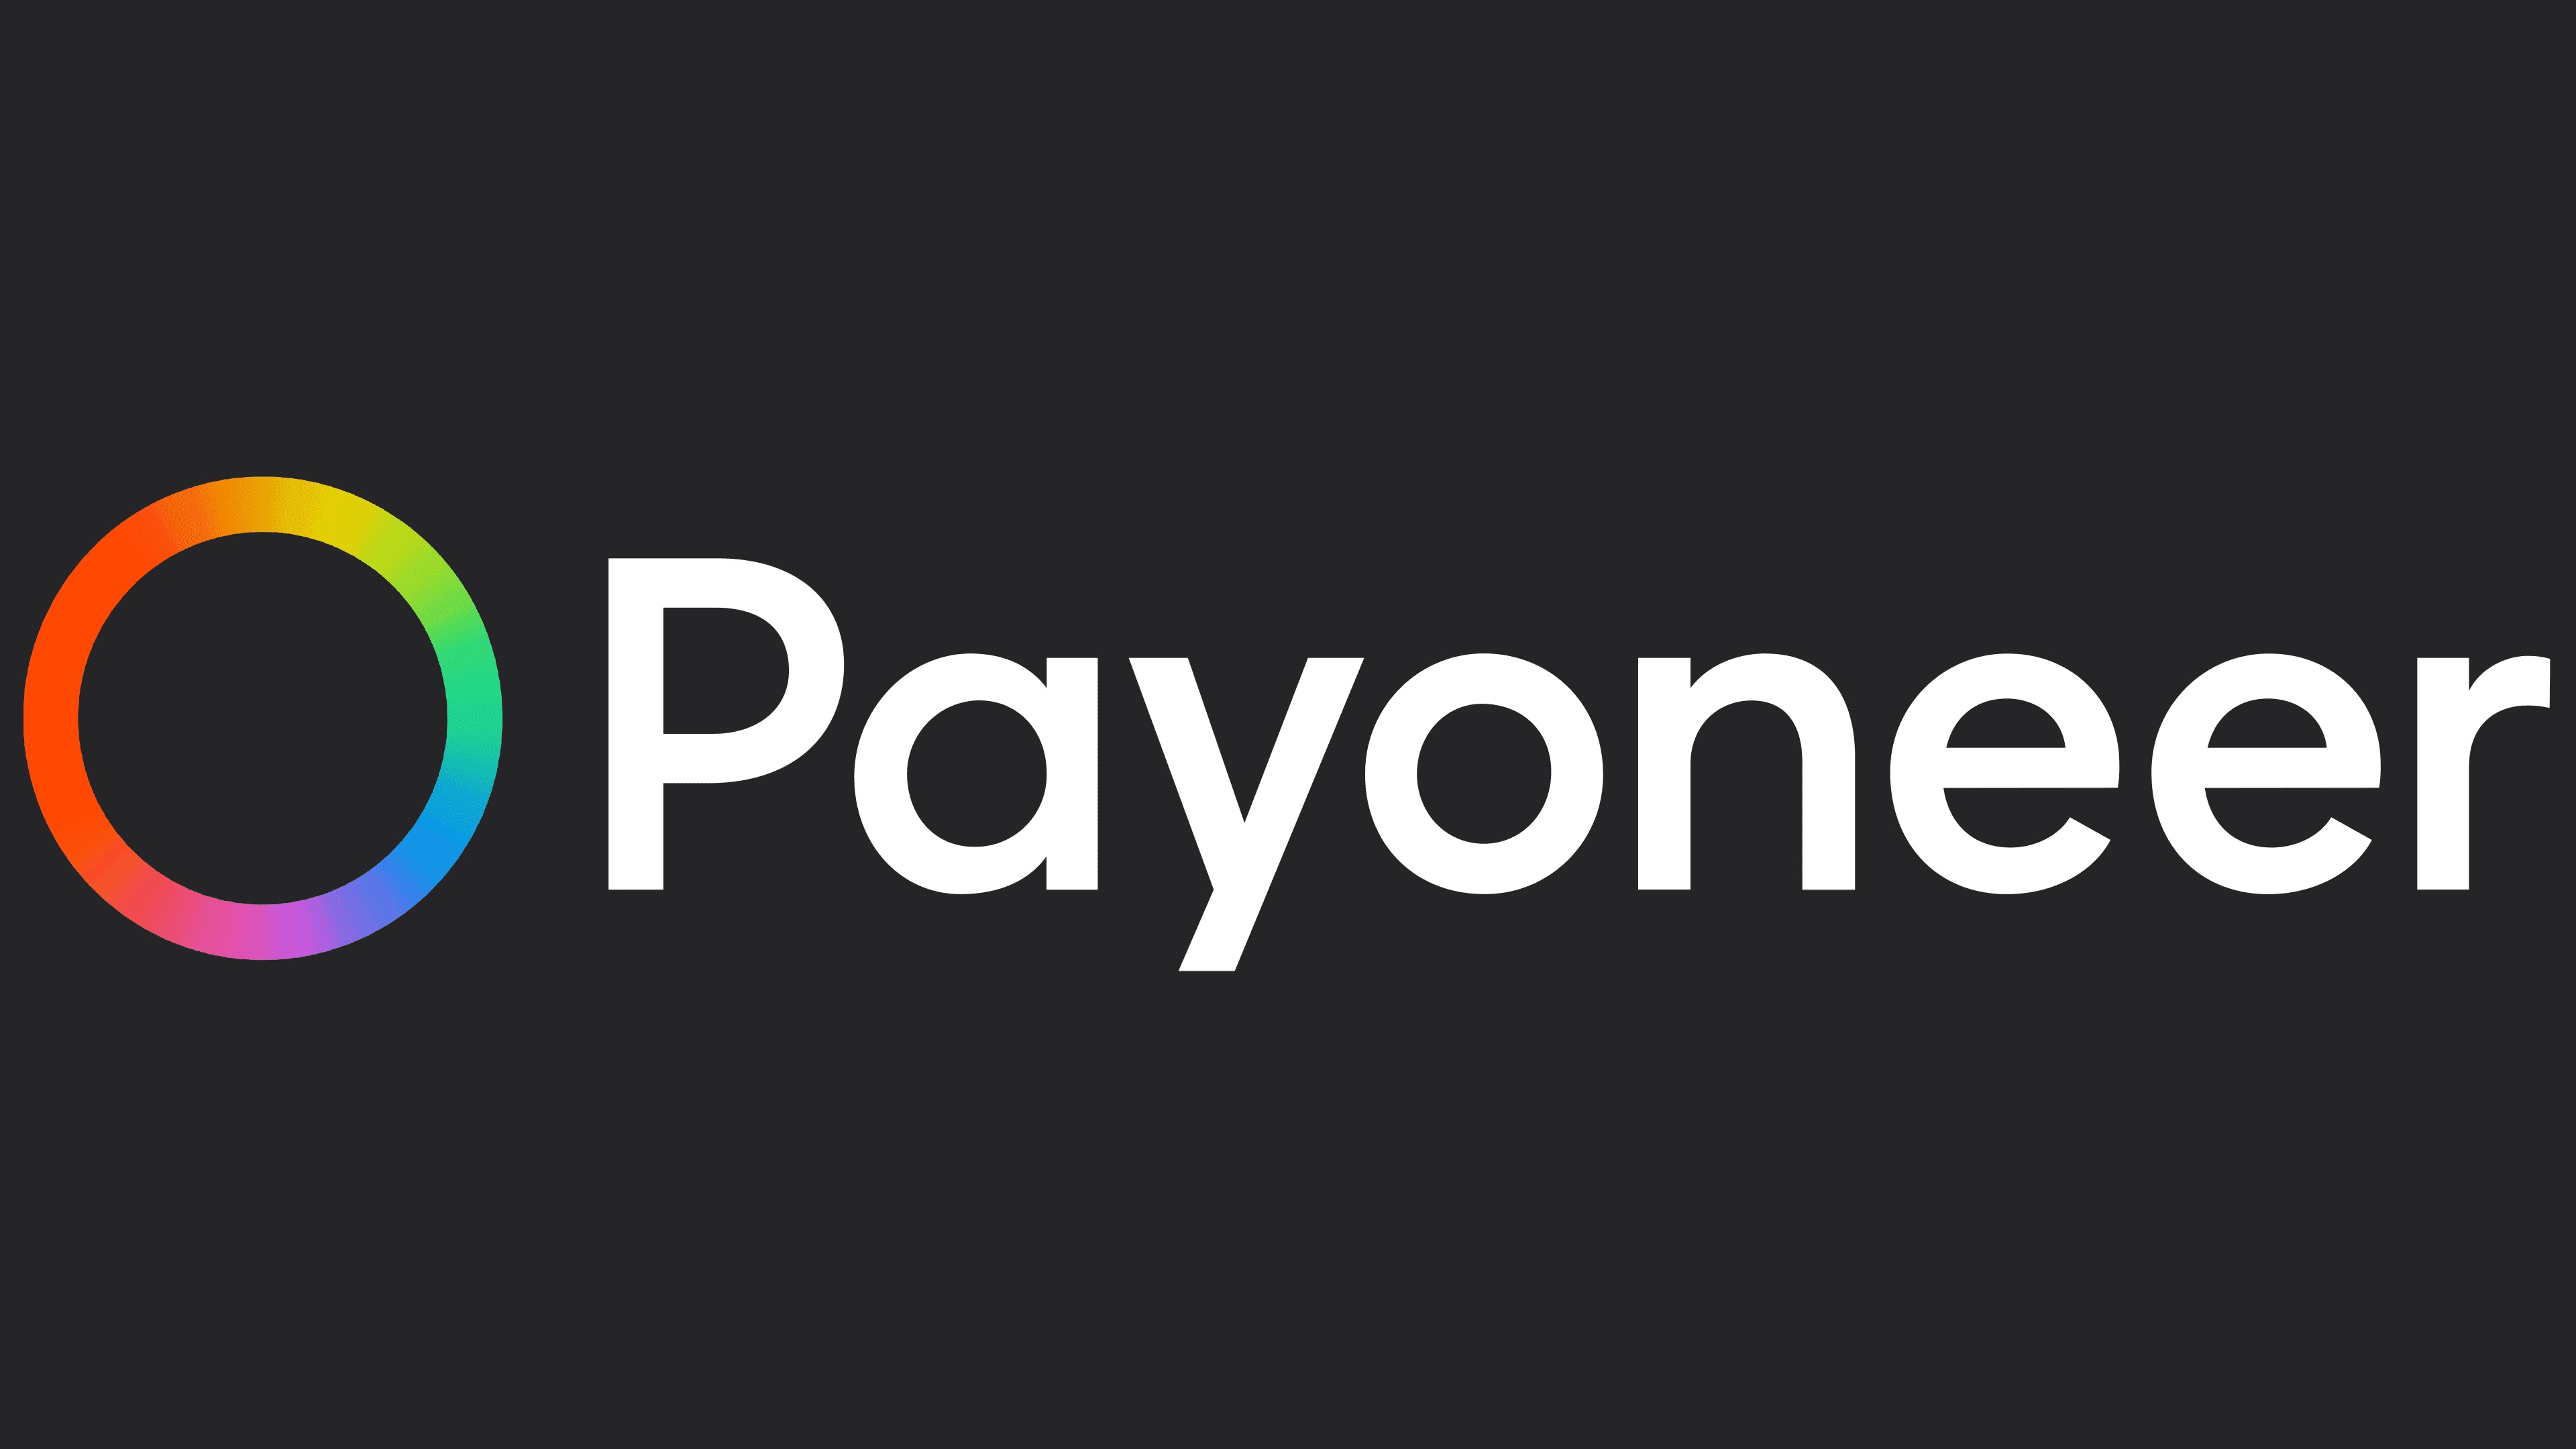 ПриватБанк запустил интеграцию с Payoneer в Приват24: какие возможности это дает